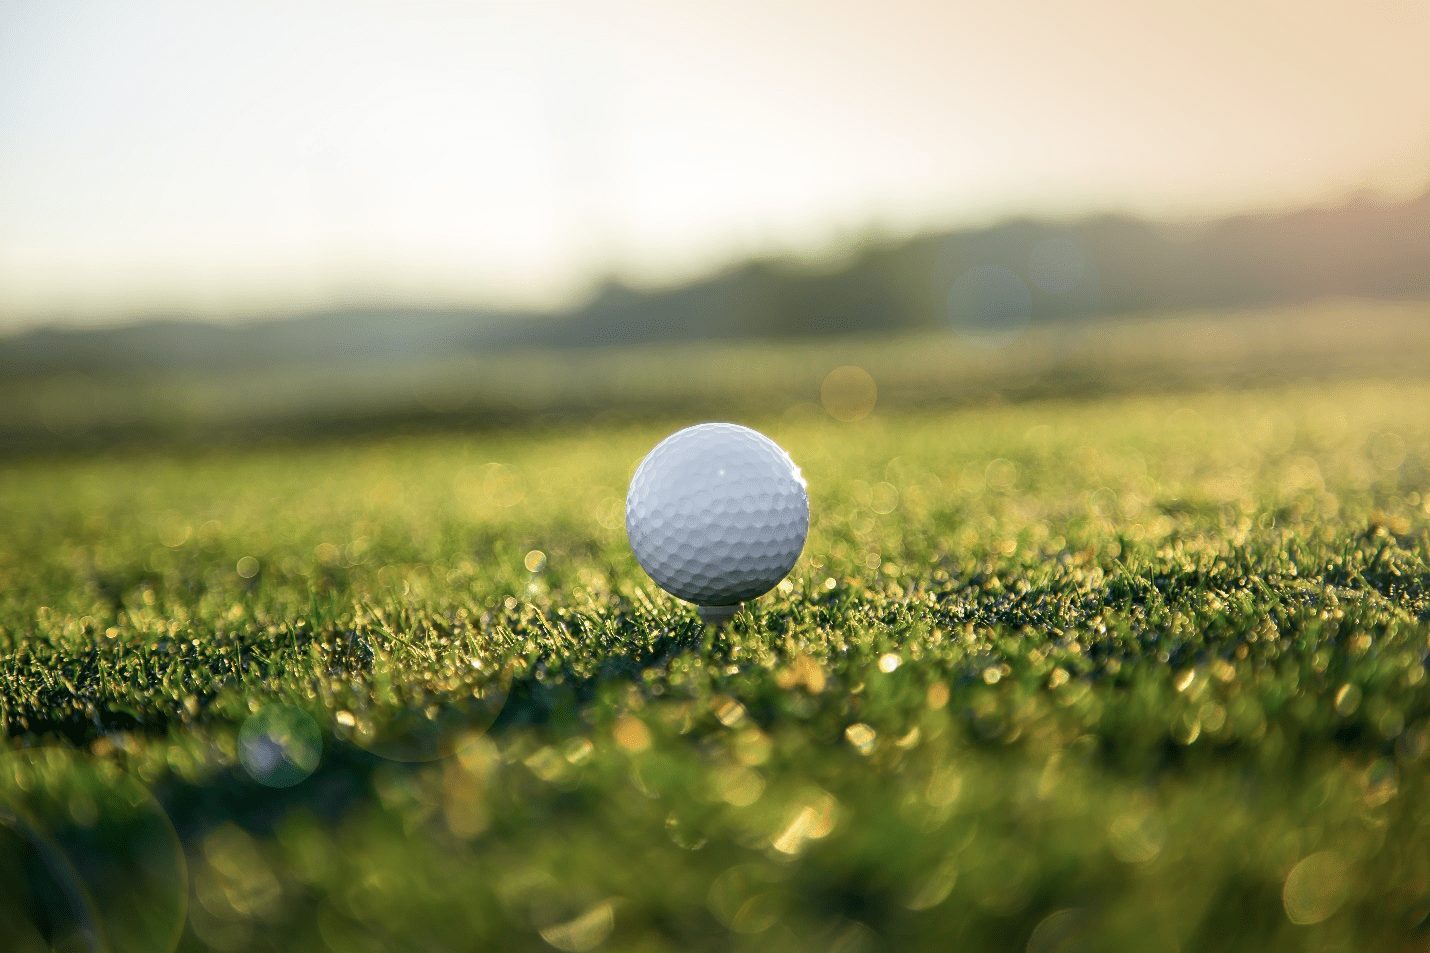 A golf ball close-up